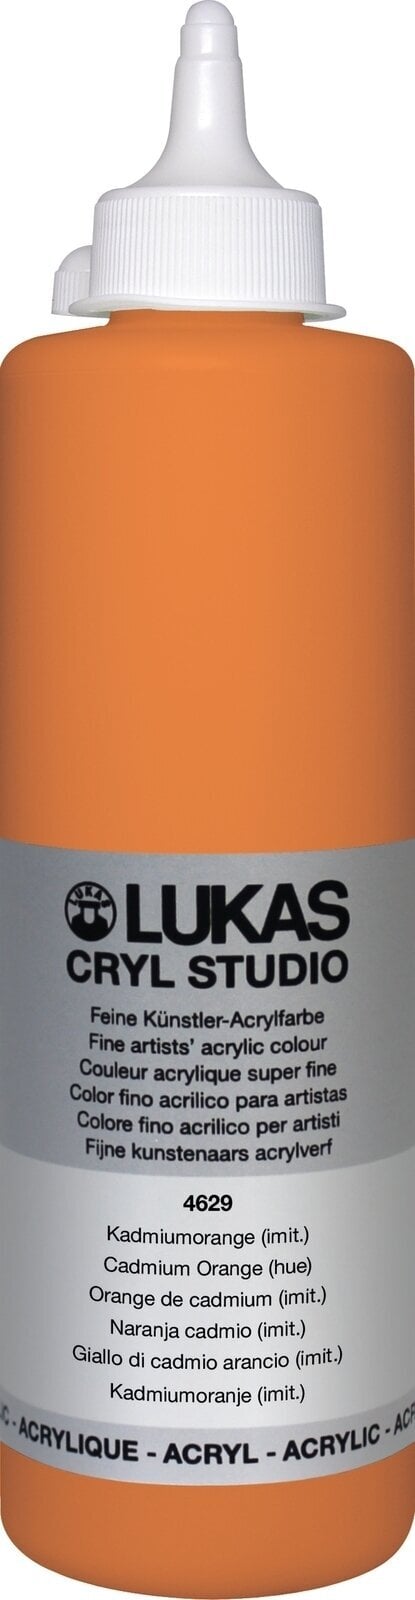 Peinture acrylique Lukas Cryl Studio Acrylic Paint Plastic Bottle Peinture acrylique Cadmium Orange Hue 500 ml 1 pc